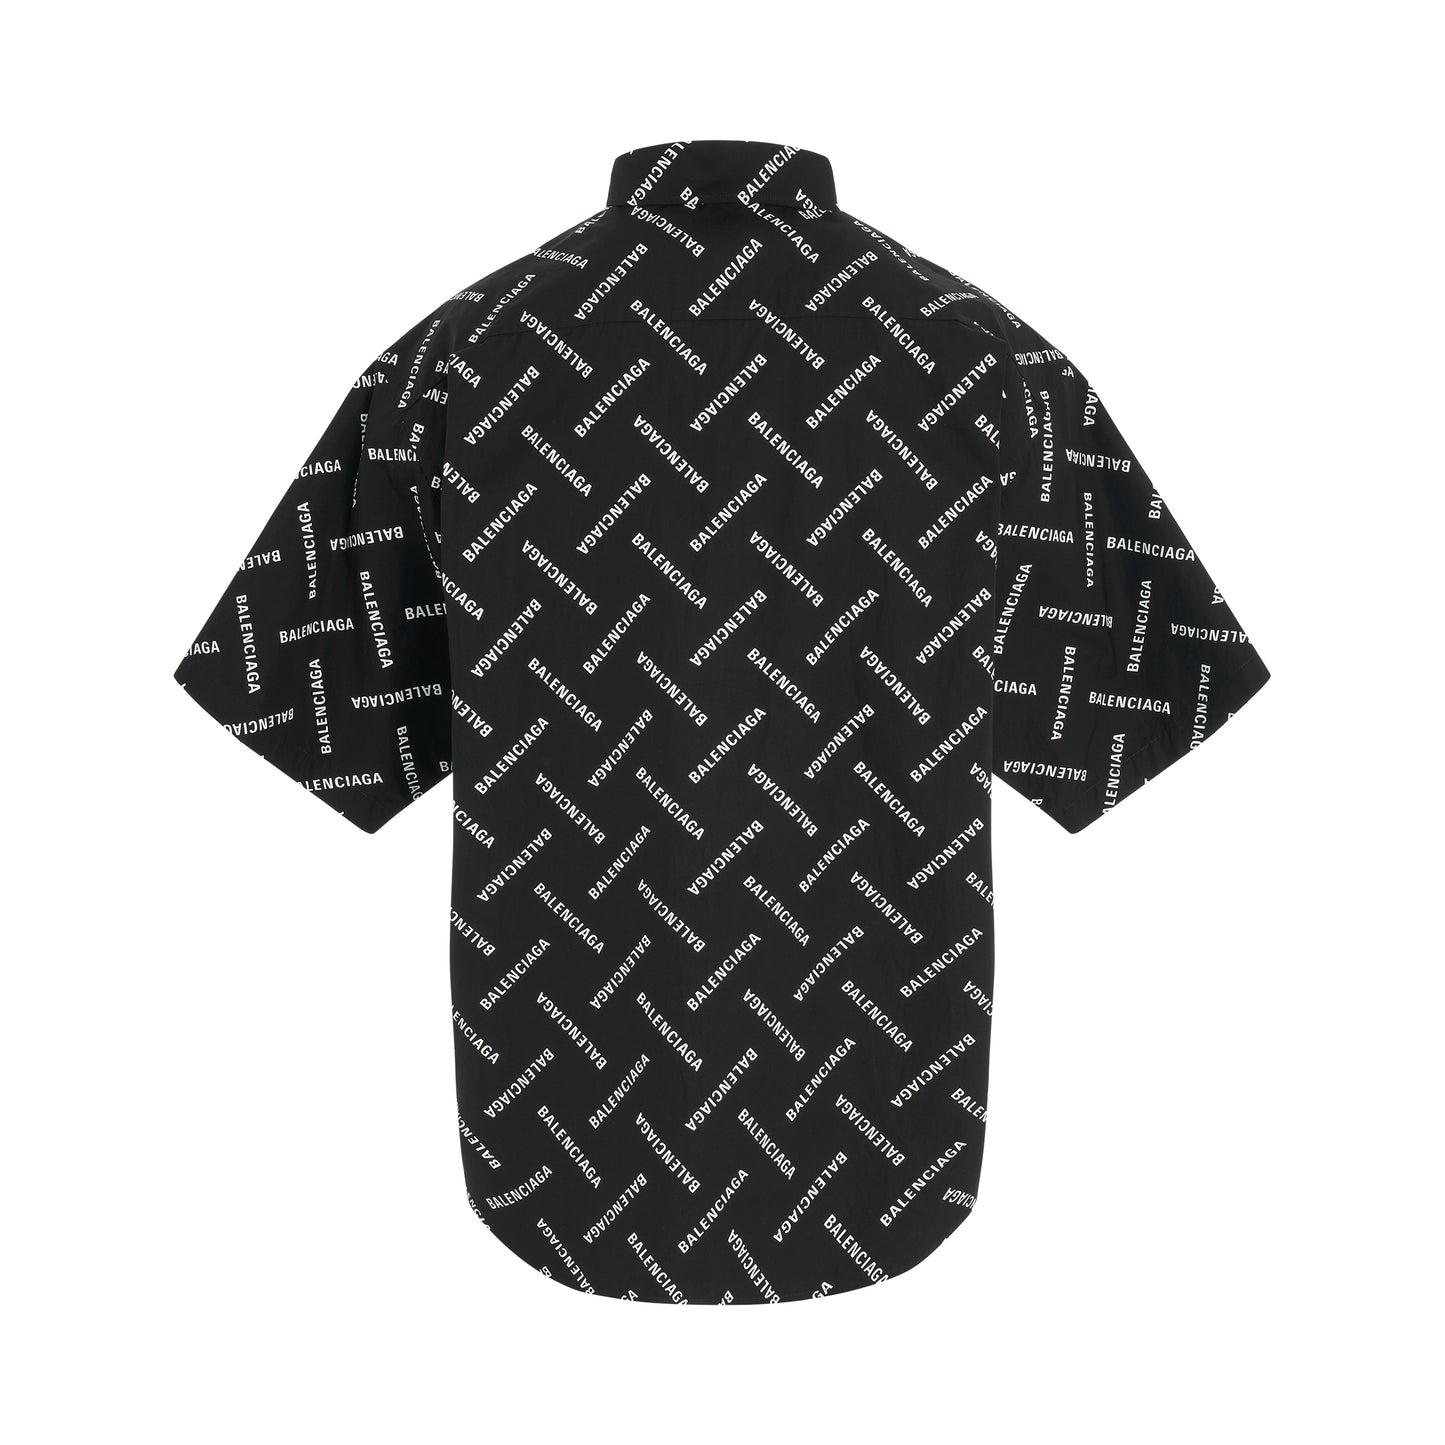 All-Over Logo Short-Sleeve Shirt in Black/White